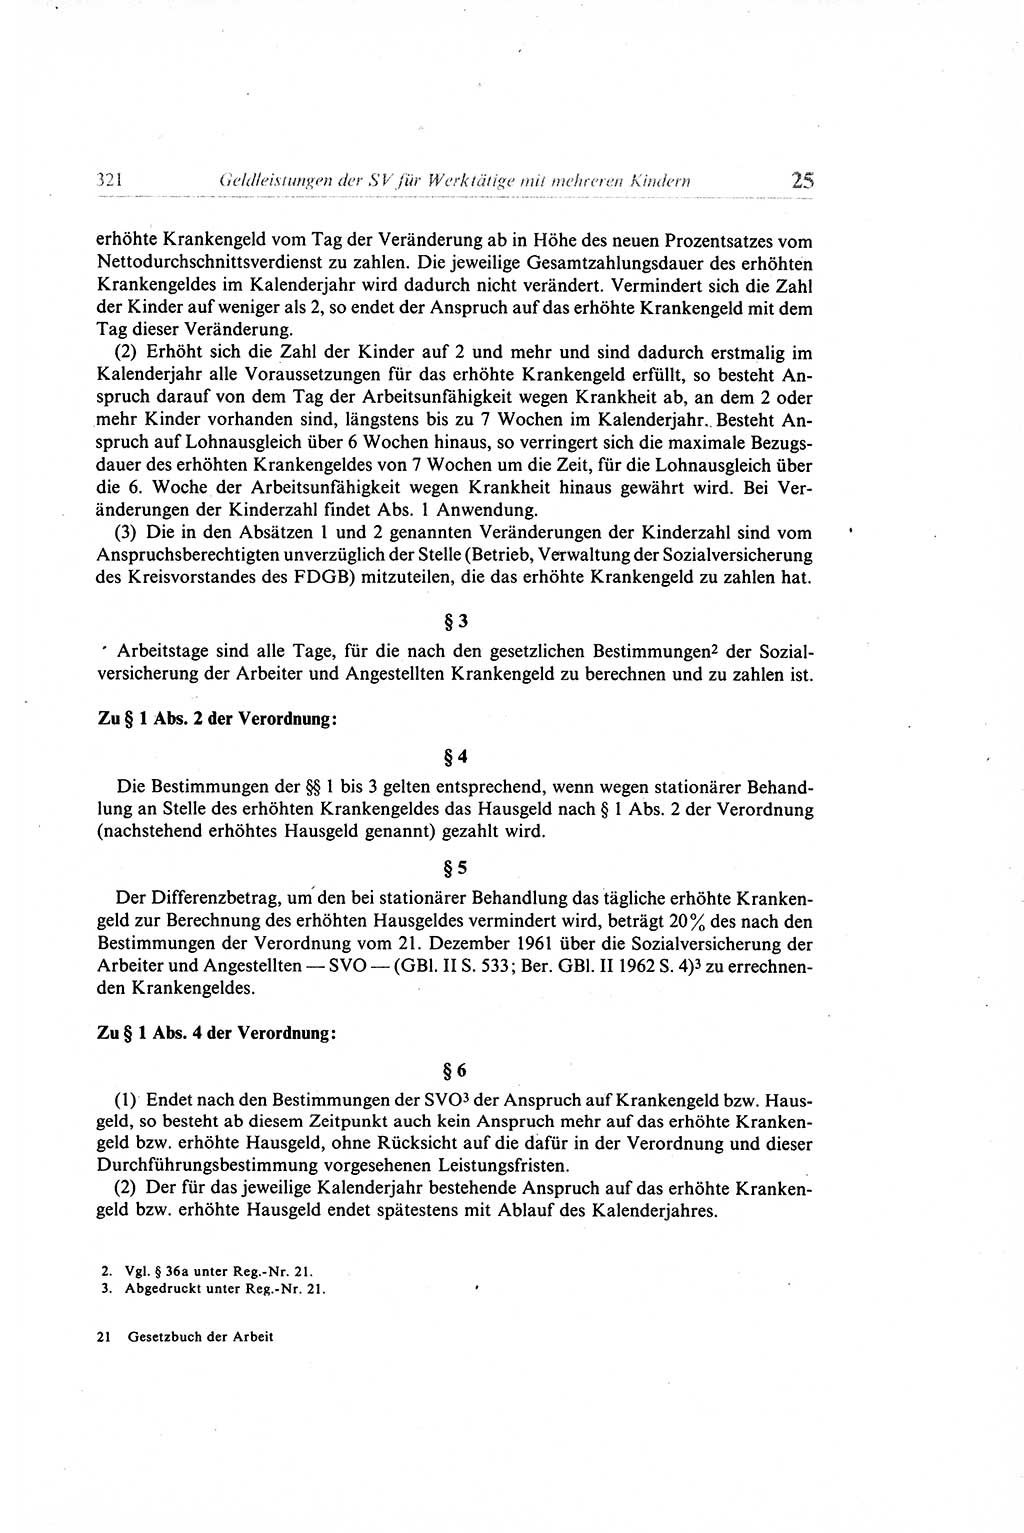 Gesetzbuch der Arbeit (GBA) und andere ausgewählte rechtliche Bestimmungen [Deutsche Demokratische Republik (DDR)] 1968, Seite 321 (GBA DDR 1968, S. 321)